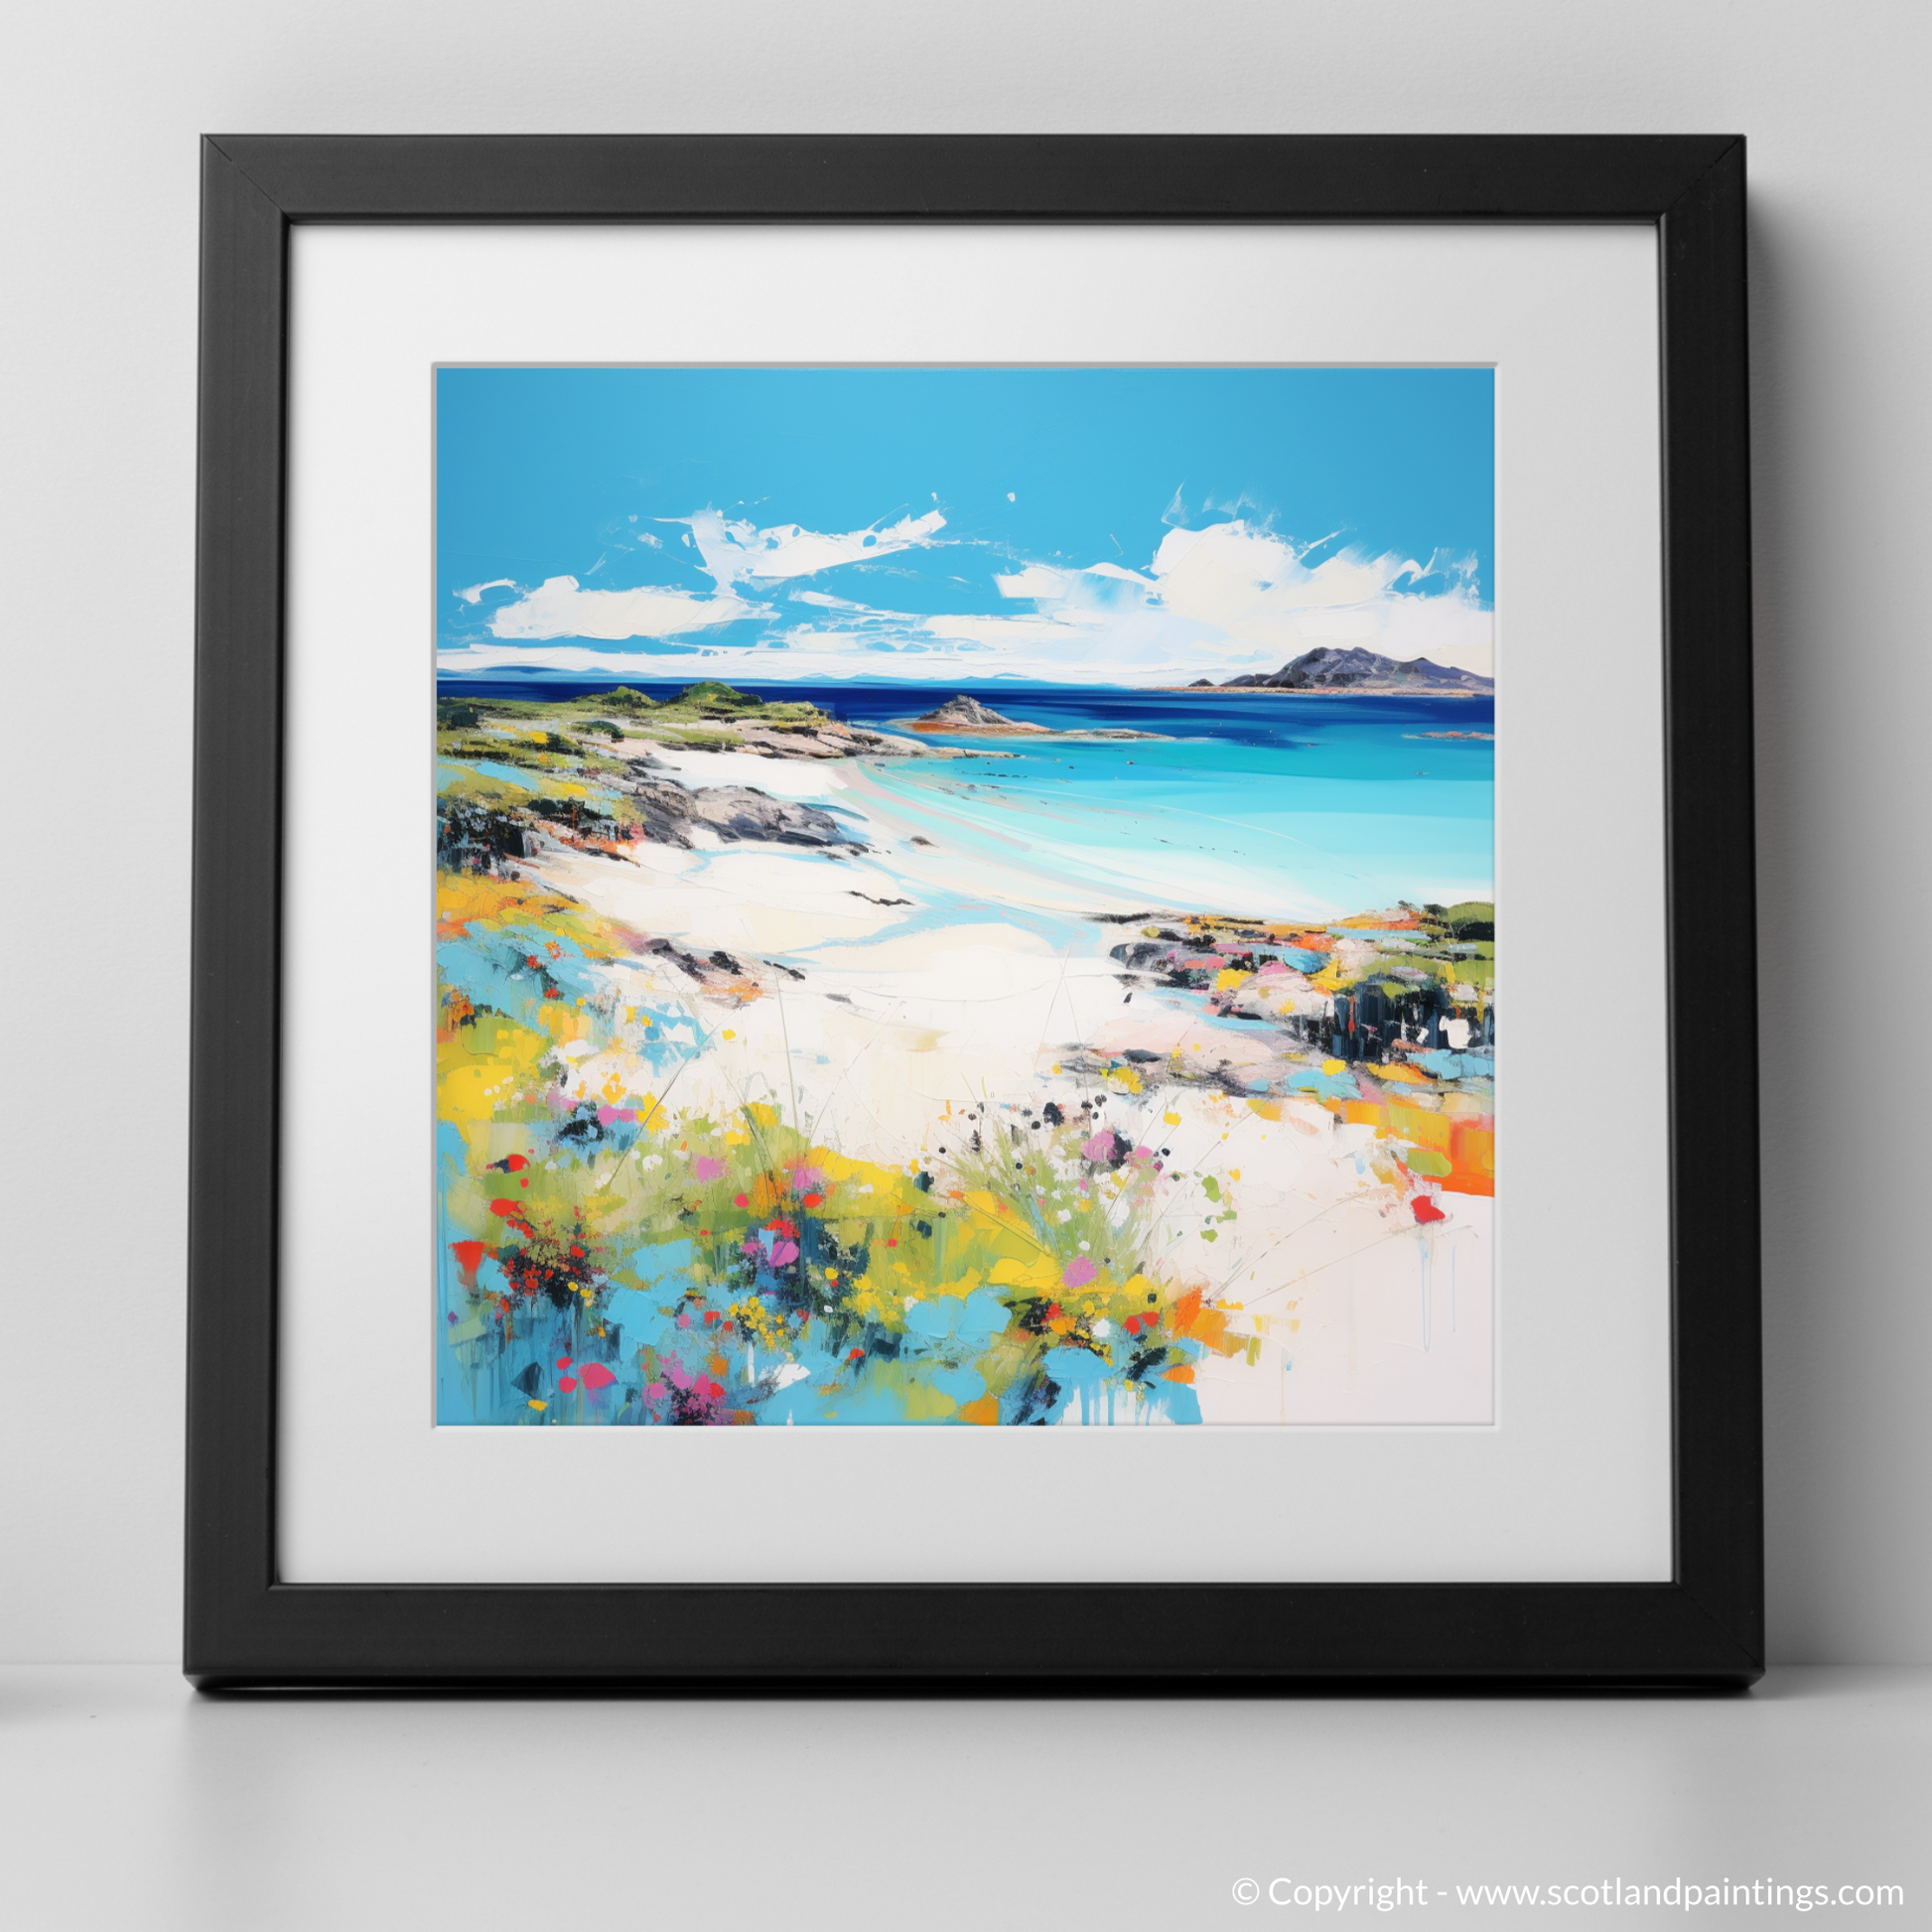 Art Print of Arisaig Beach, Arisaig in summer with a black frame